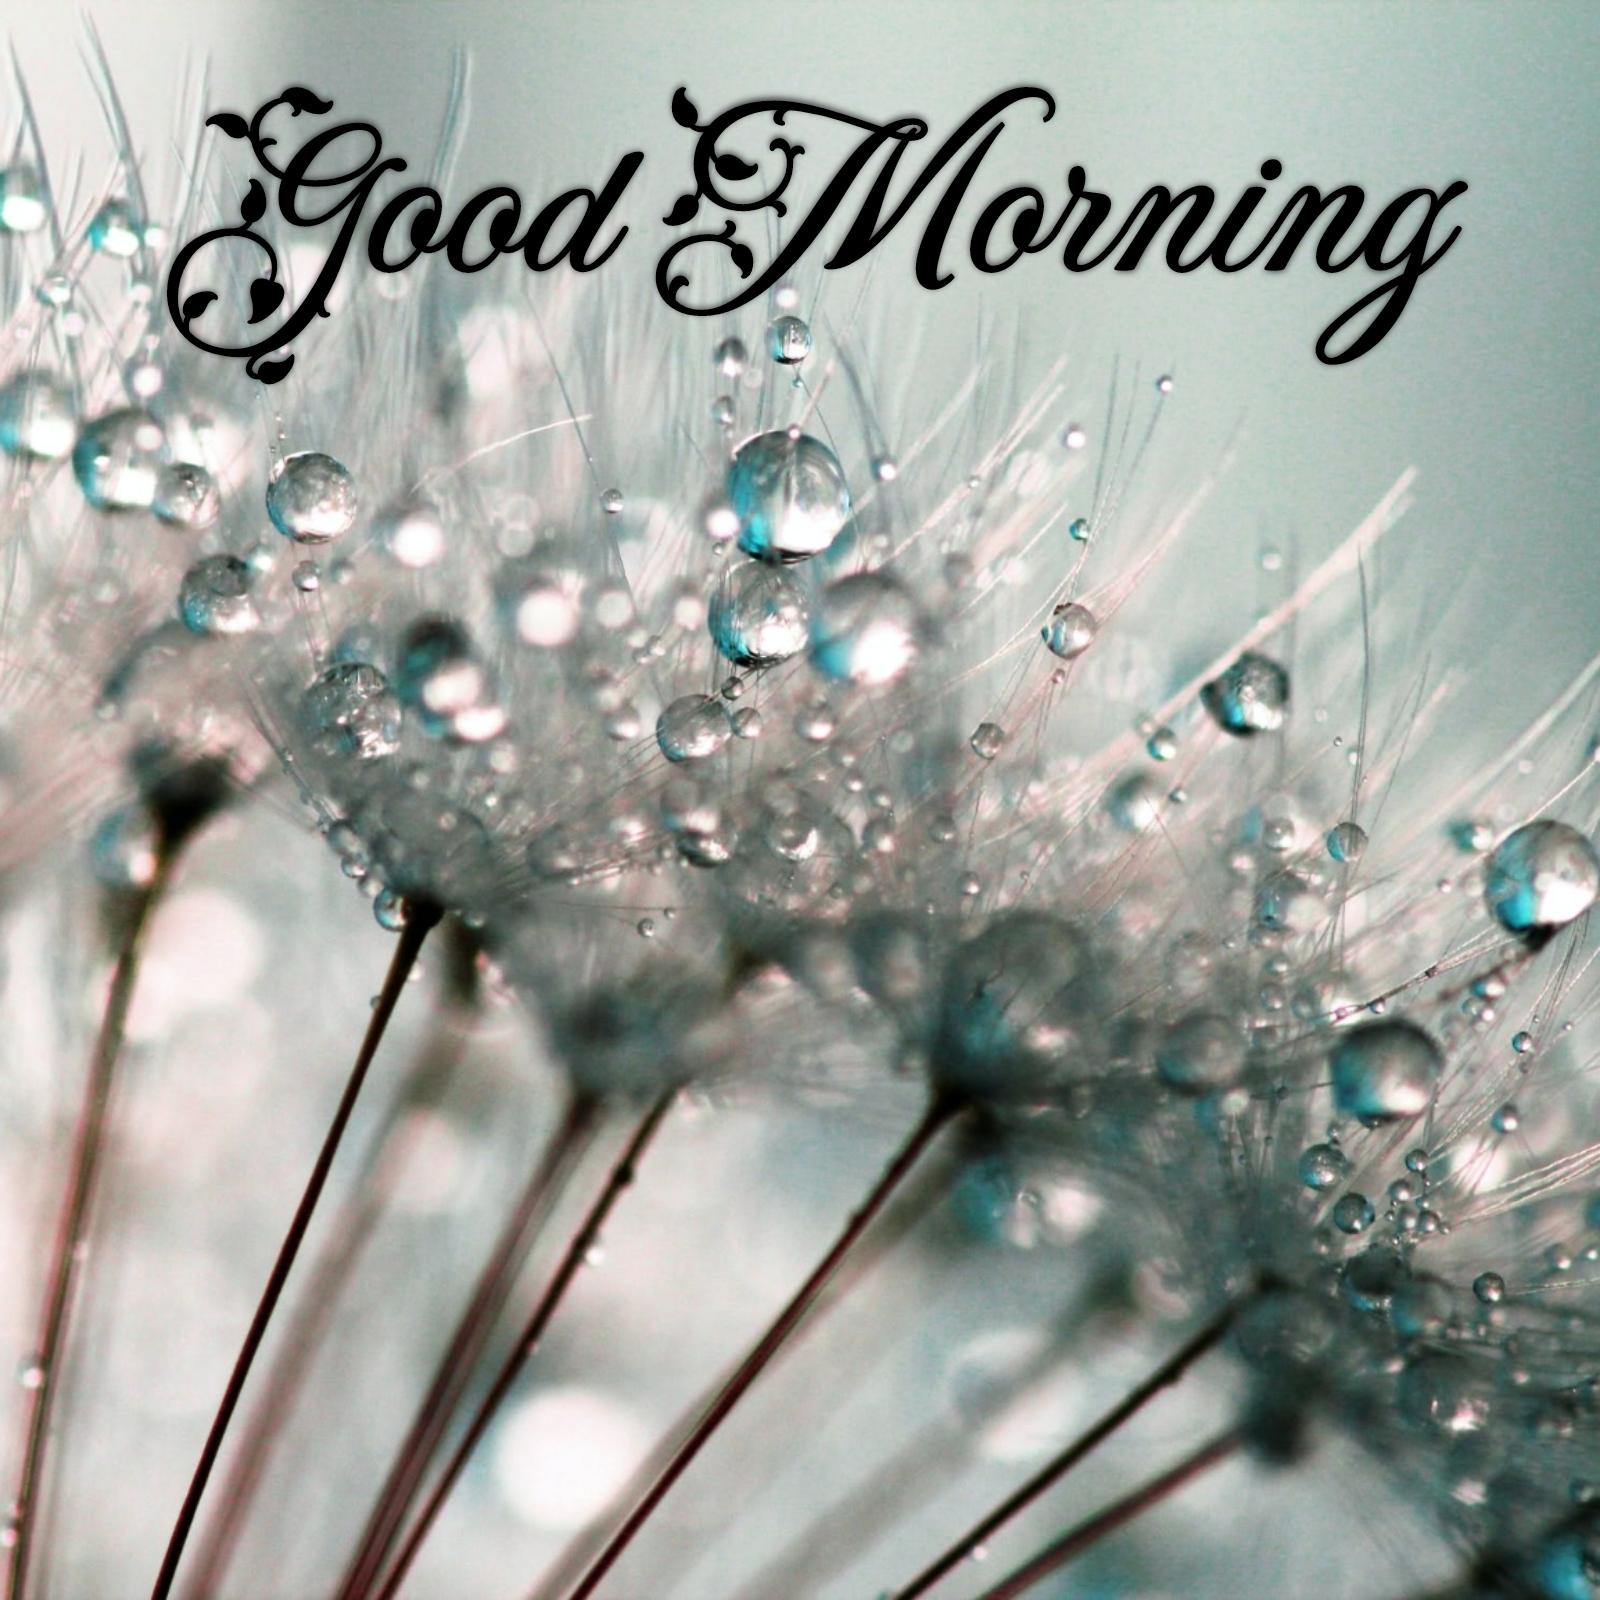 Beautiful Rainy Morning Images